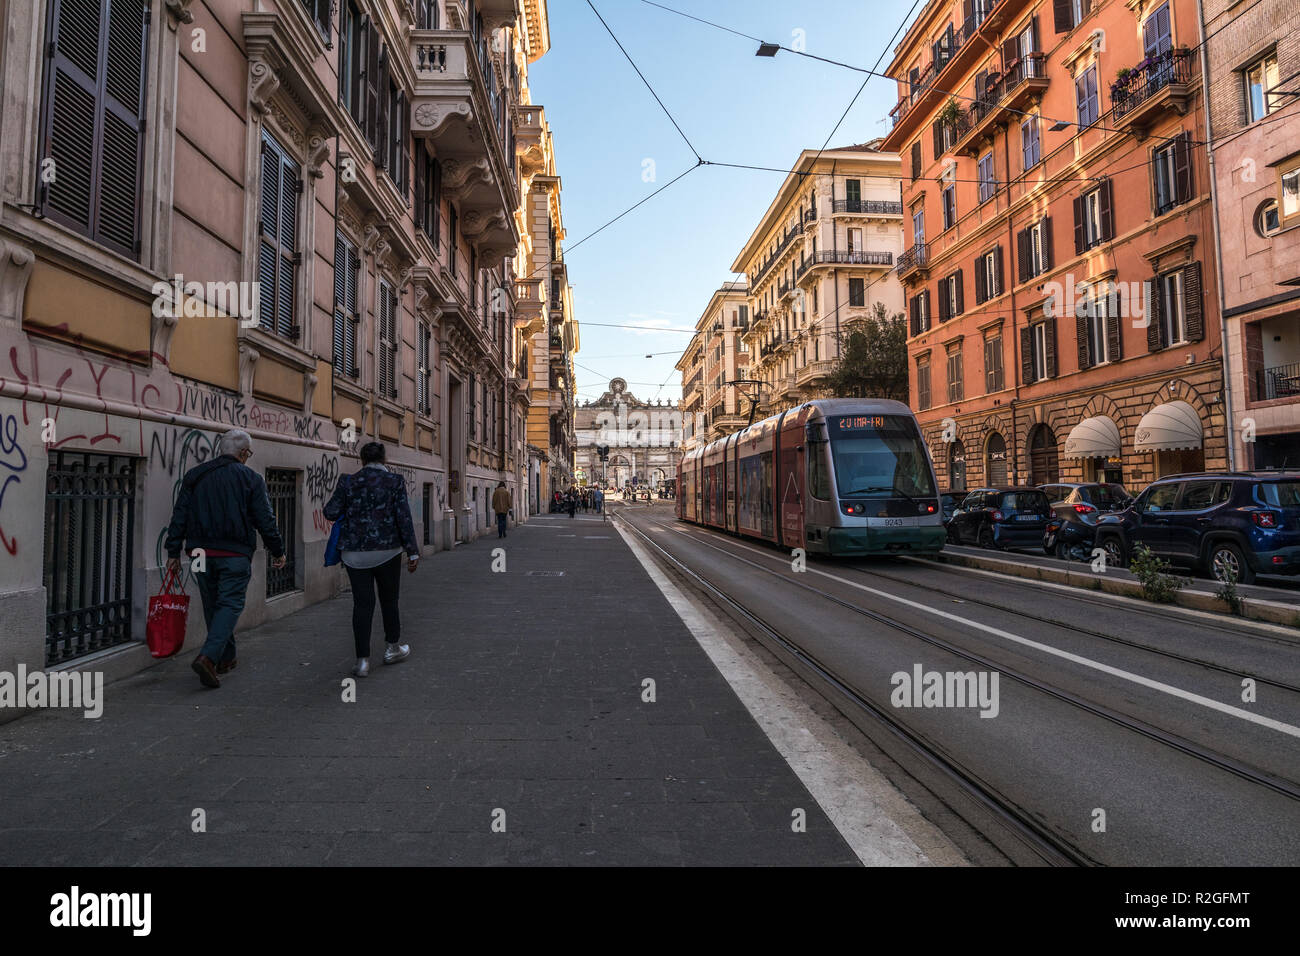 11/09/2018 - Rome, Italie : Dimanche après-midi dans le centre-ville, route de transport avec ATAC menant à Piazzale Flaminio et Piazza del Popolo. Peopl Banque D'Images